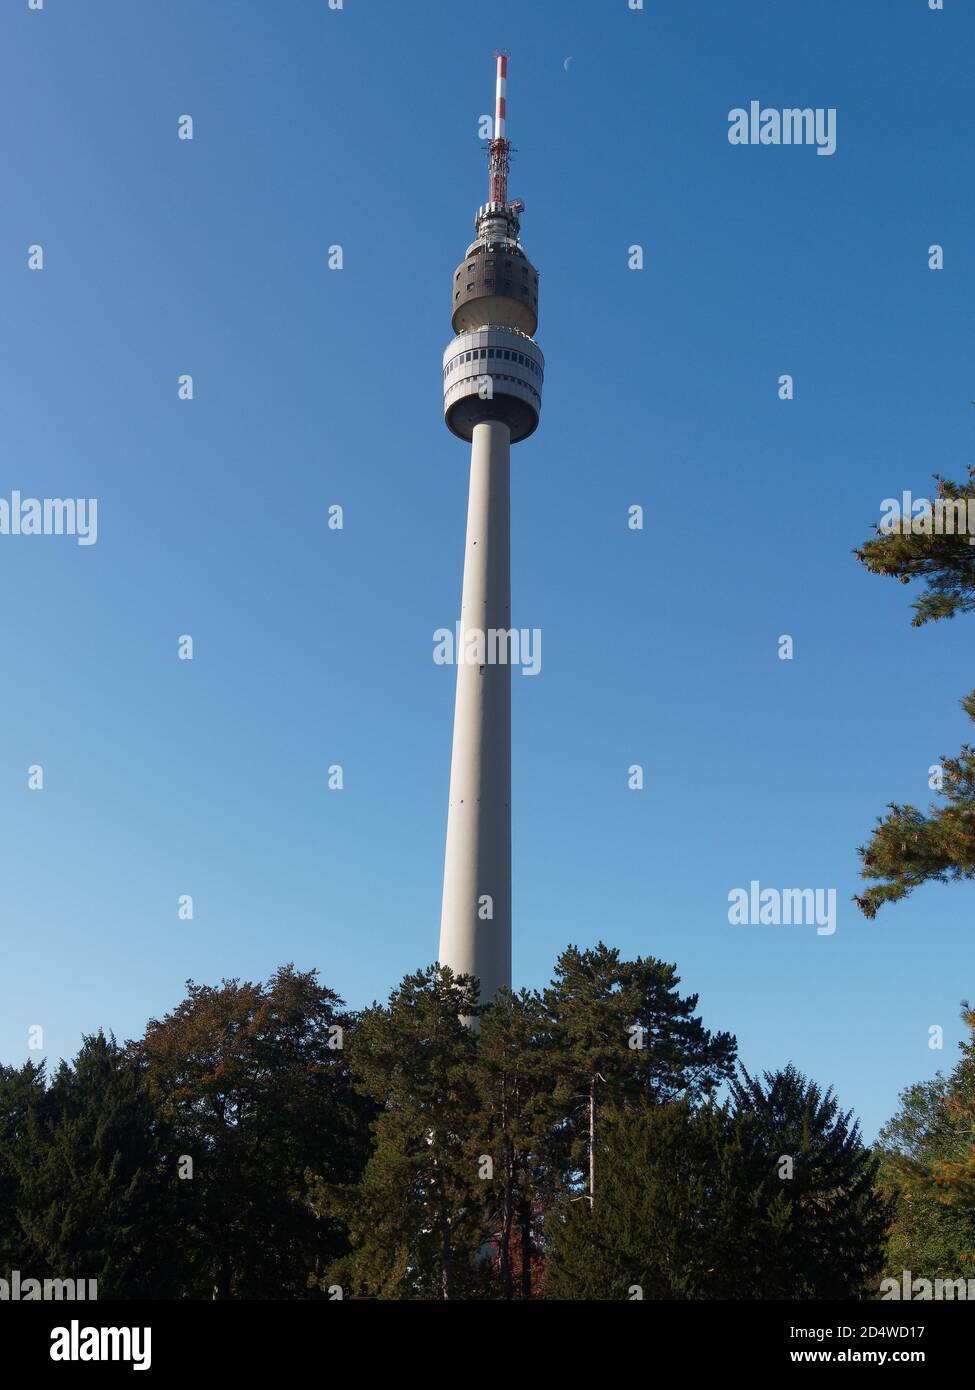 Florianturm Fernsehturm im Westfalenpark hinter Bäumen, in Dortmund, Nordrhein-Westfalen, Deutschland Westfälische Park, Landschaft, Ansicht von unten Banque D'Images